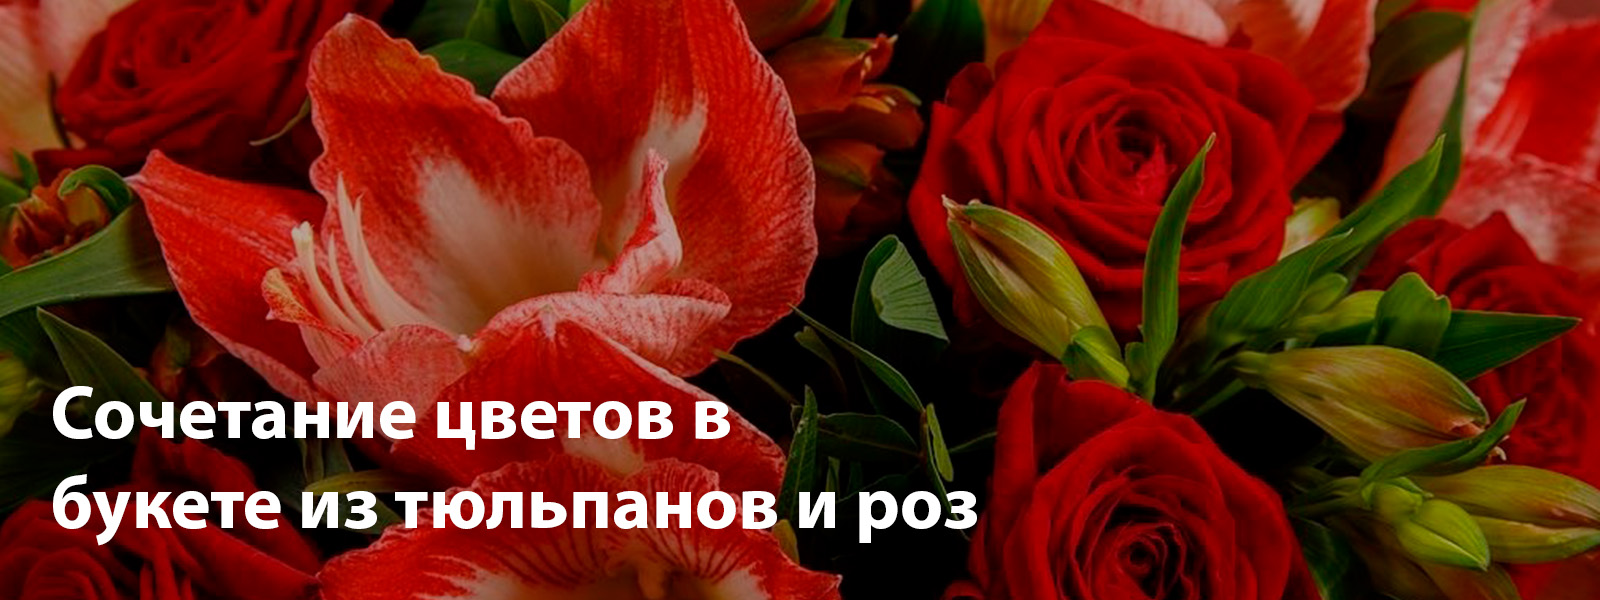 Сочетание цветов в букете из тюльпанов и роз